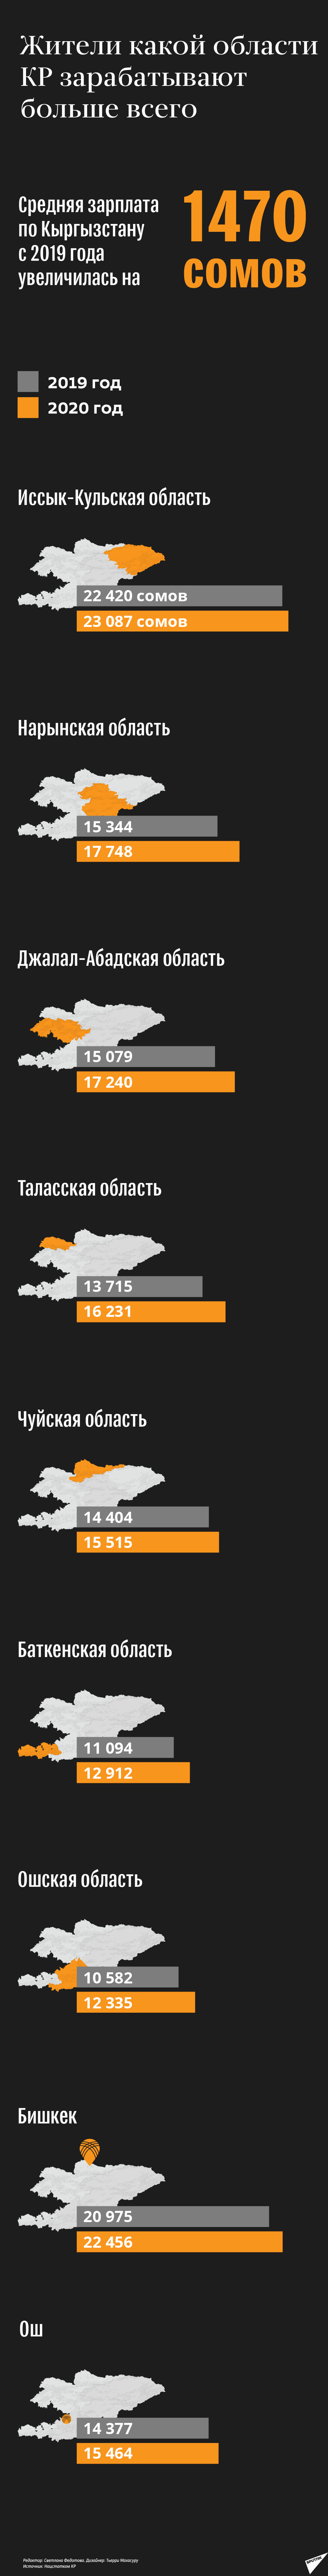 Жители какой области КР зарабатывают больше всего - Sputnik Кыргызстан, 1920, 02.03.2021